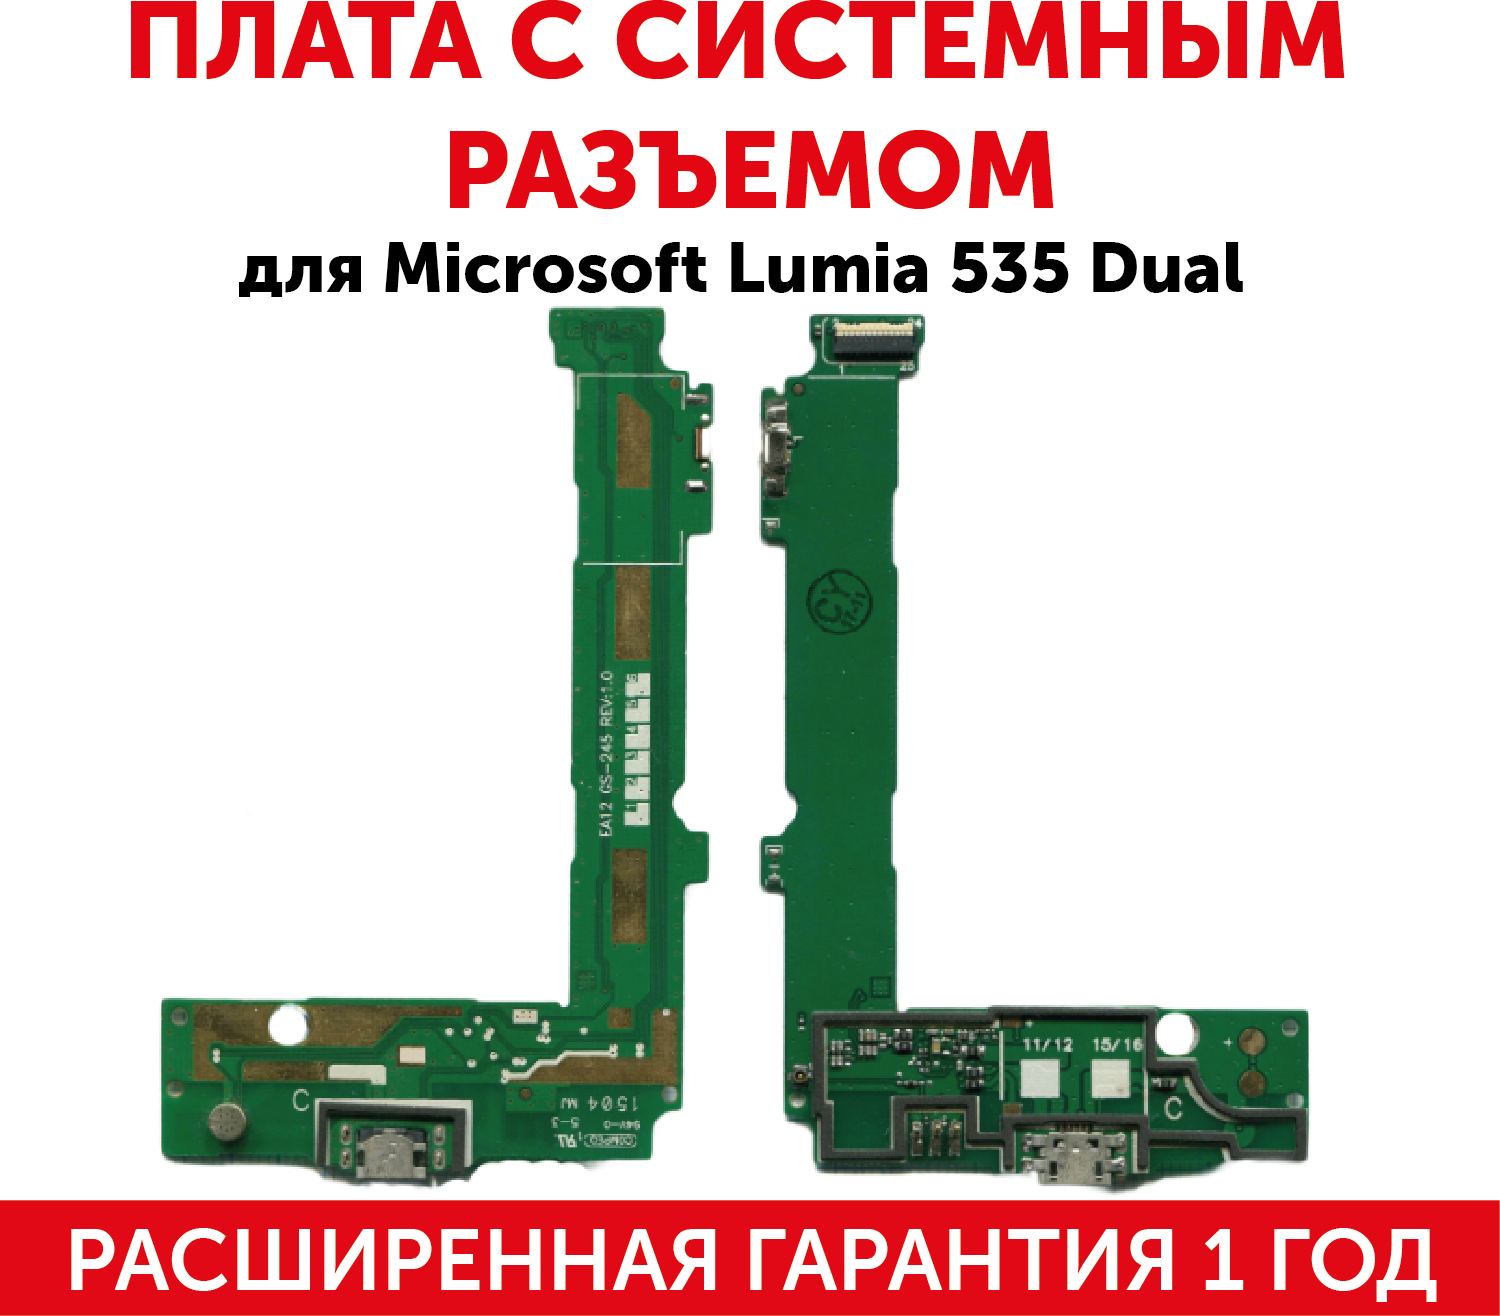 Разъем (гнездо зарядки) MicroUSB для мобильного телефона (смартфона) Microsoft 535 Dual (плата с системным разъемом, микрофоном и шлейфом)